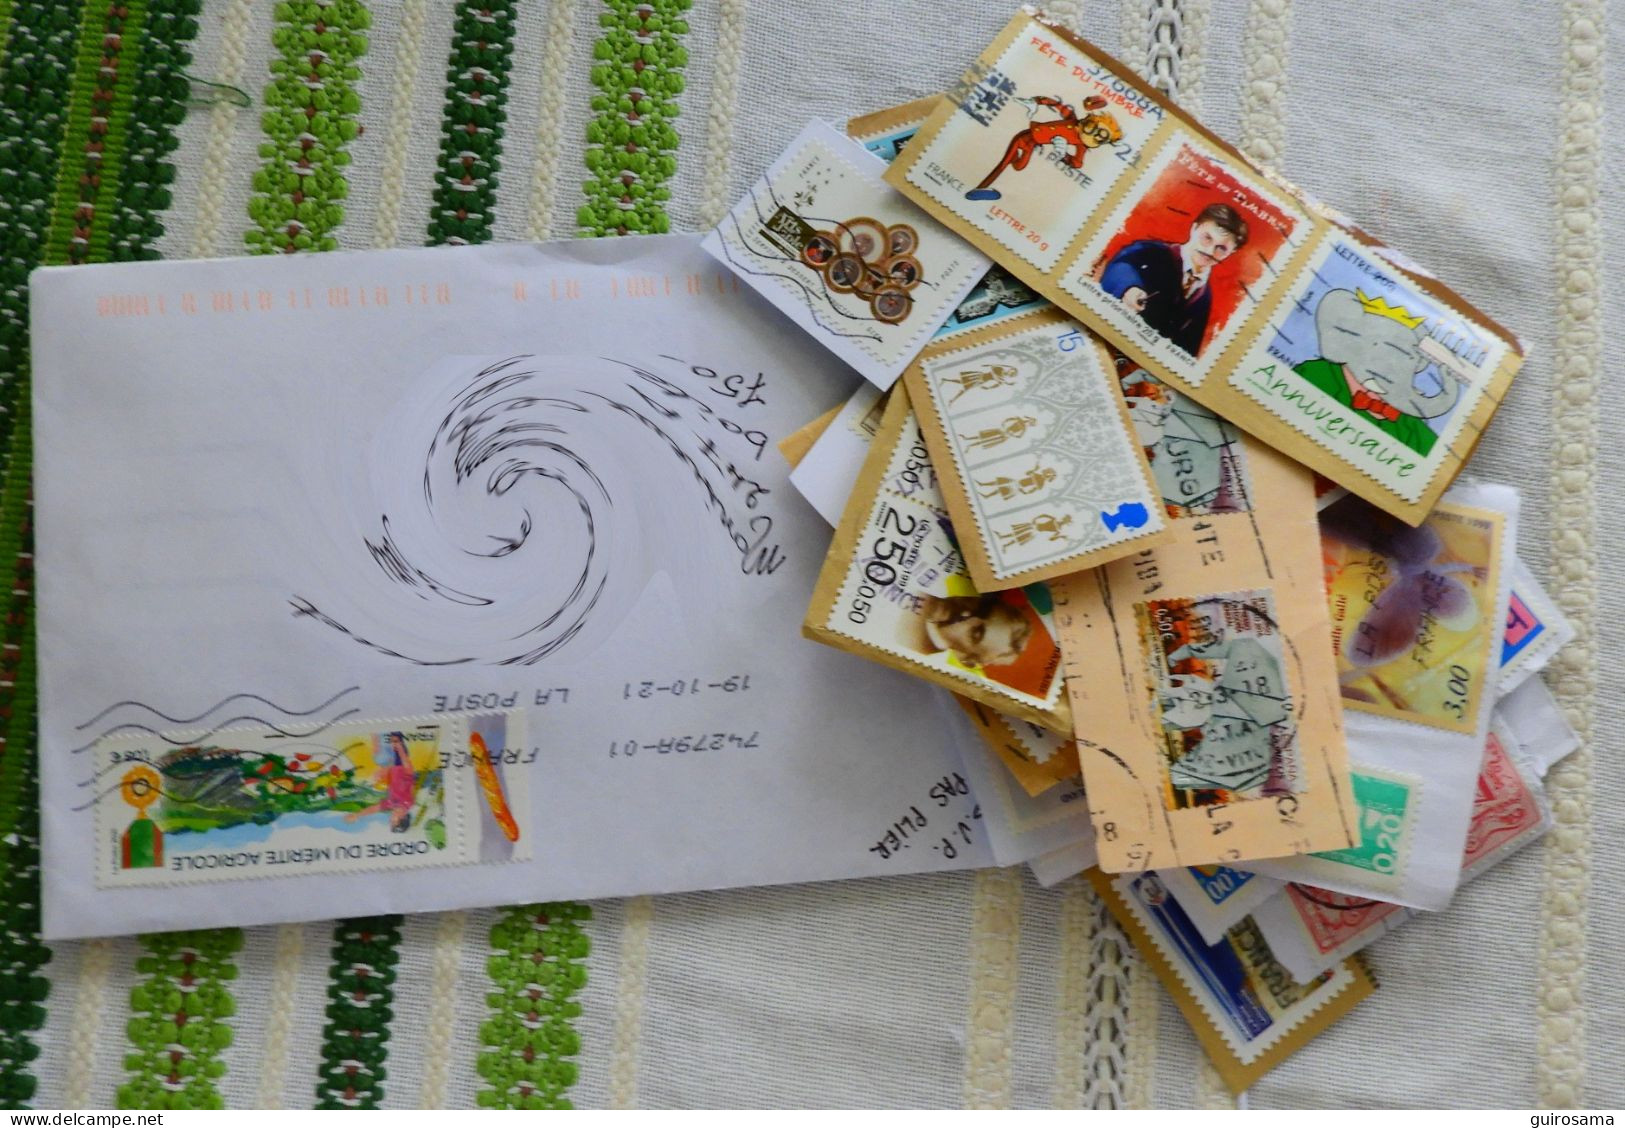 Lot de 230g de timbres oblitérés récents (reçus depuis 2016)